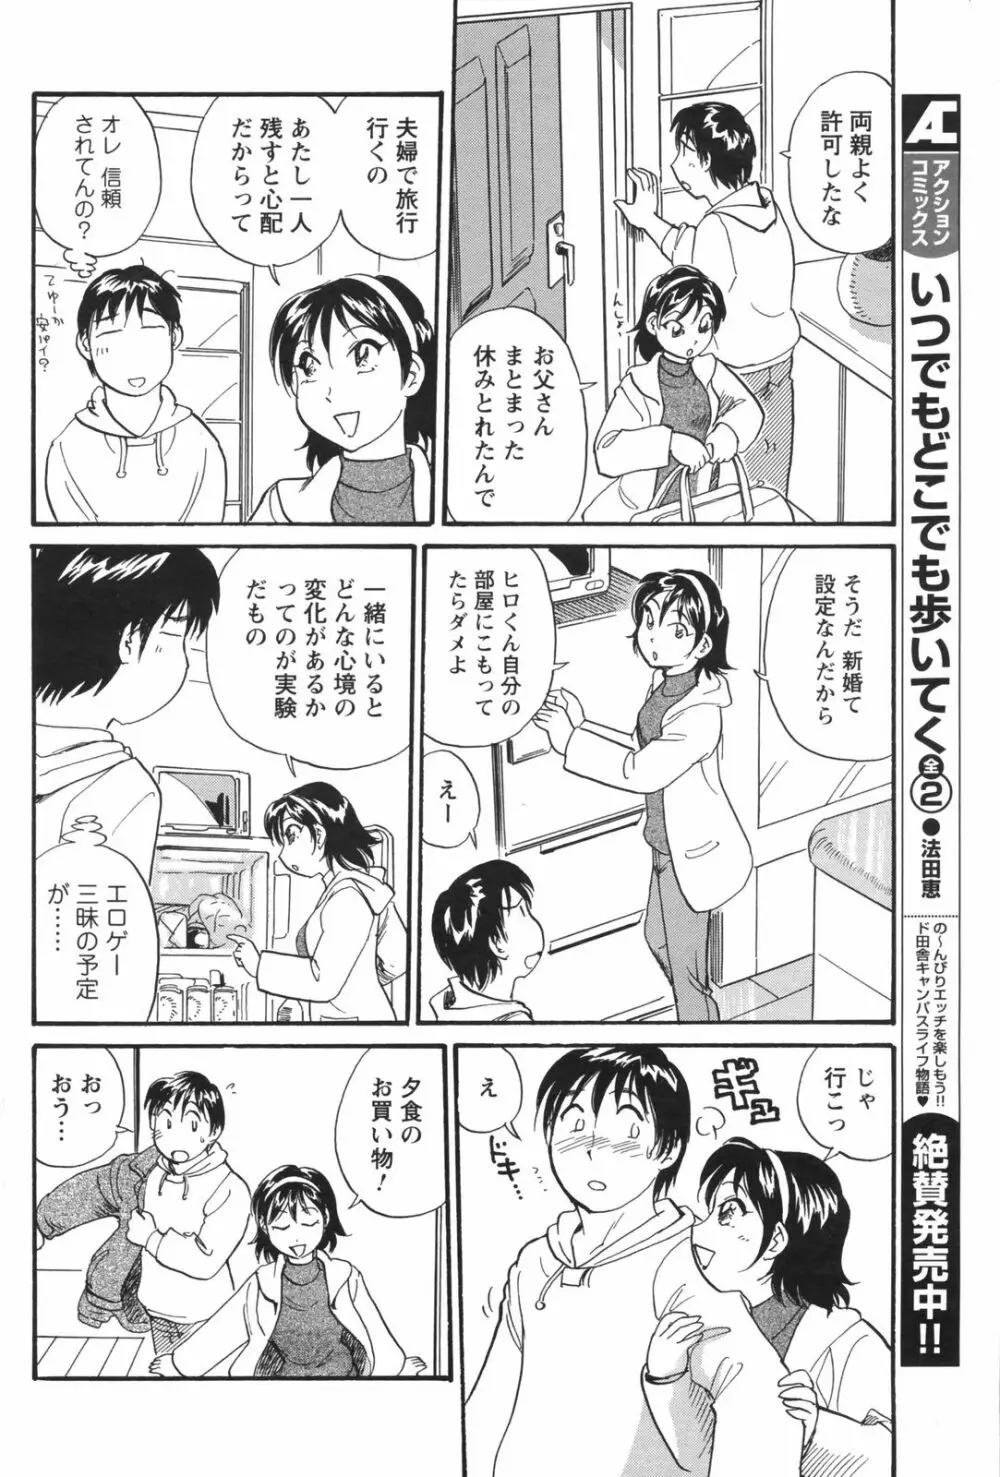 メンズヤングスペシャルIKAZUCHI雷 Vol.5 2008年3月号増刊 182ページ